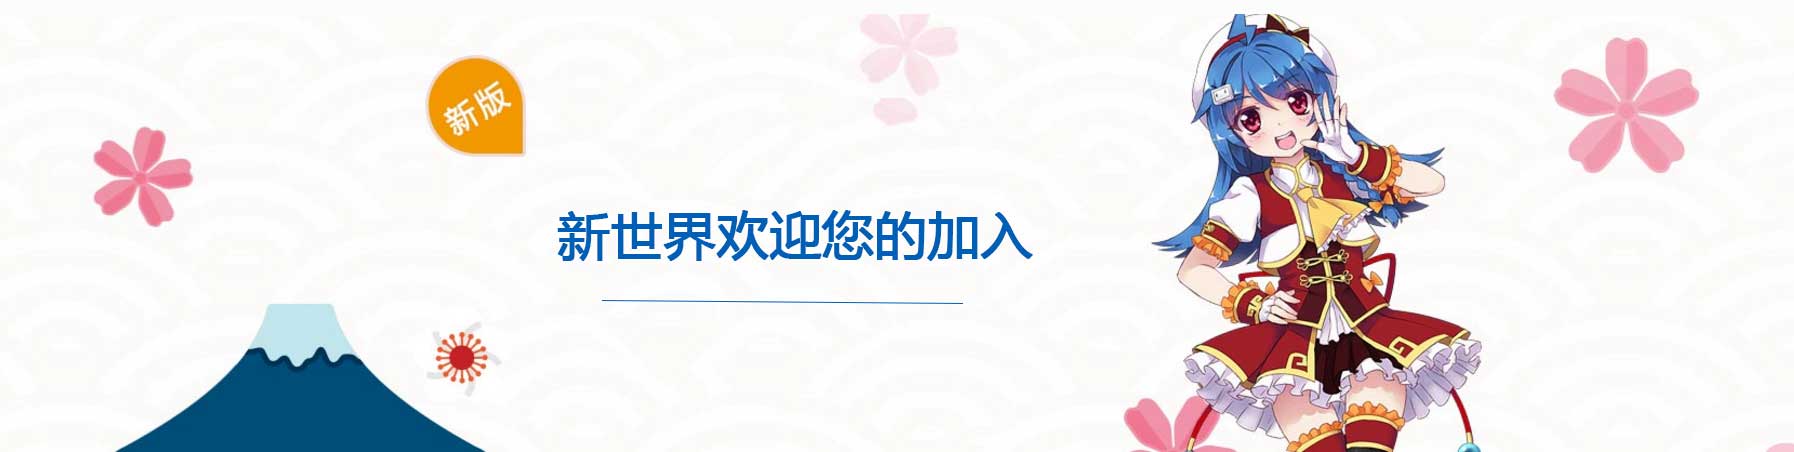 郑州日语培训机构--新世界欢迎您的加入